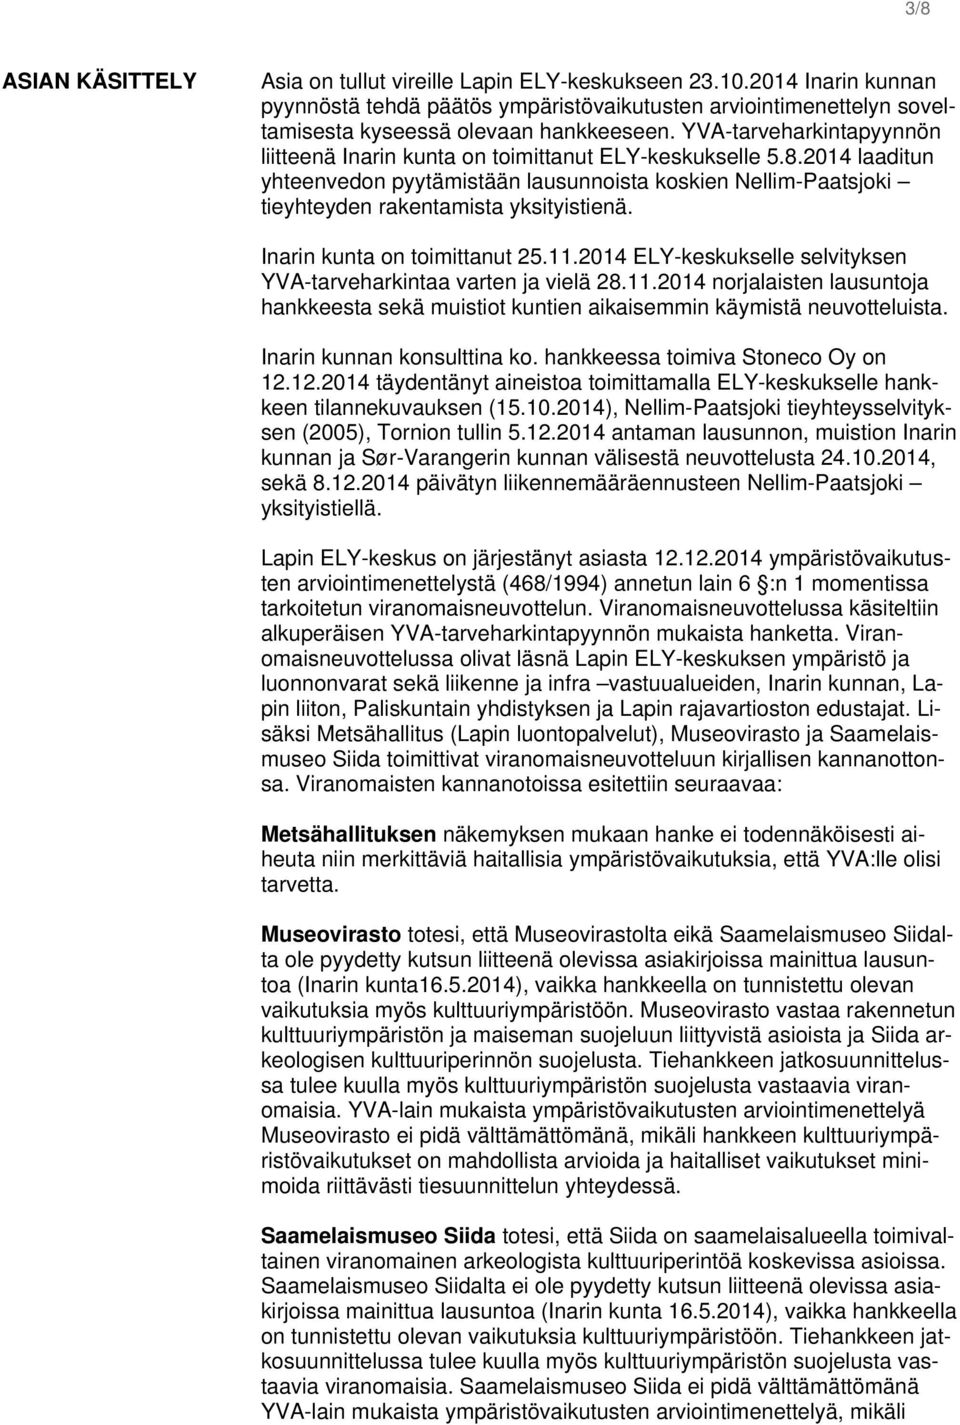 Inarin kunta on toimittanut 25.11.2014 ELY-keskukselle selvityksen YVA-tarveharkintaa varten ja vielä 28.11.2014 norjalaisten lausuntoja hankkeesta sekä muistiot kuntien aikaisemmin käymistä neuvotteluista.